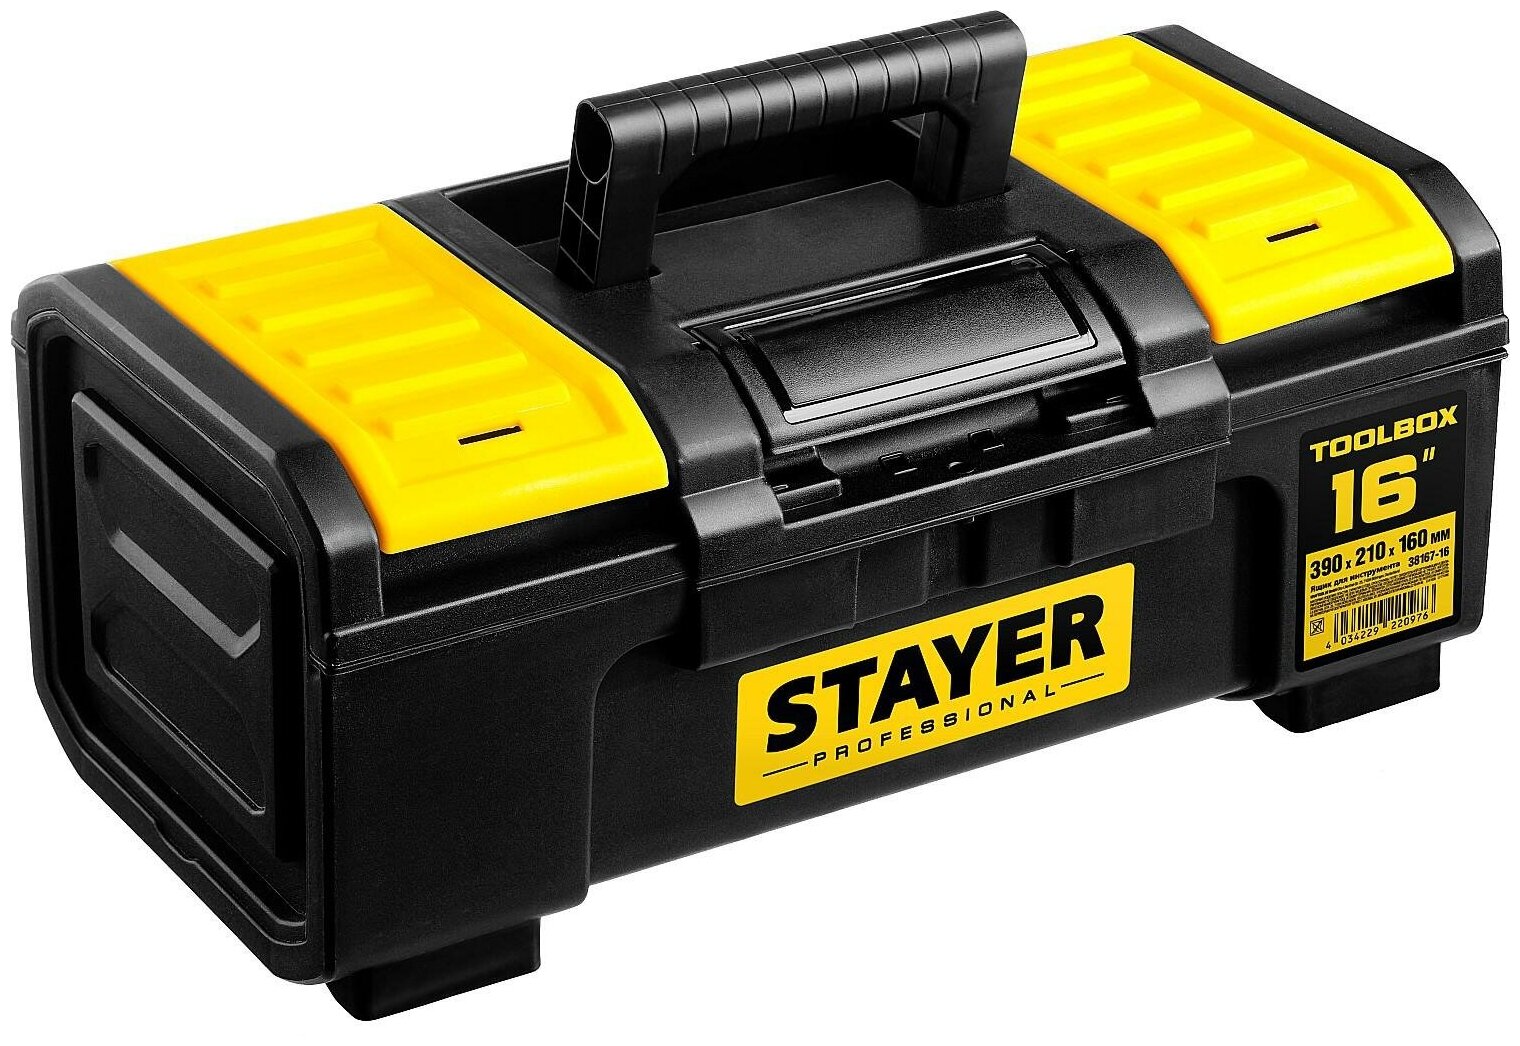 Ящик с органайзером STAYER Professional 38167-16, 39x21x16 см, 16' , черный/желтый